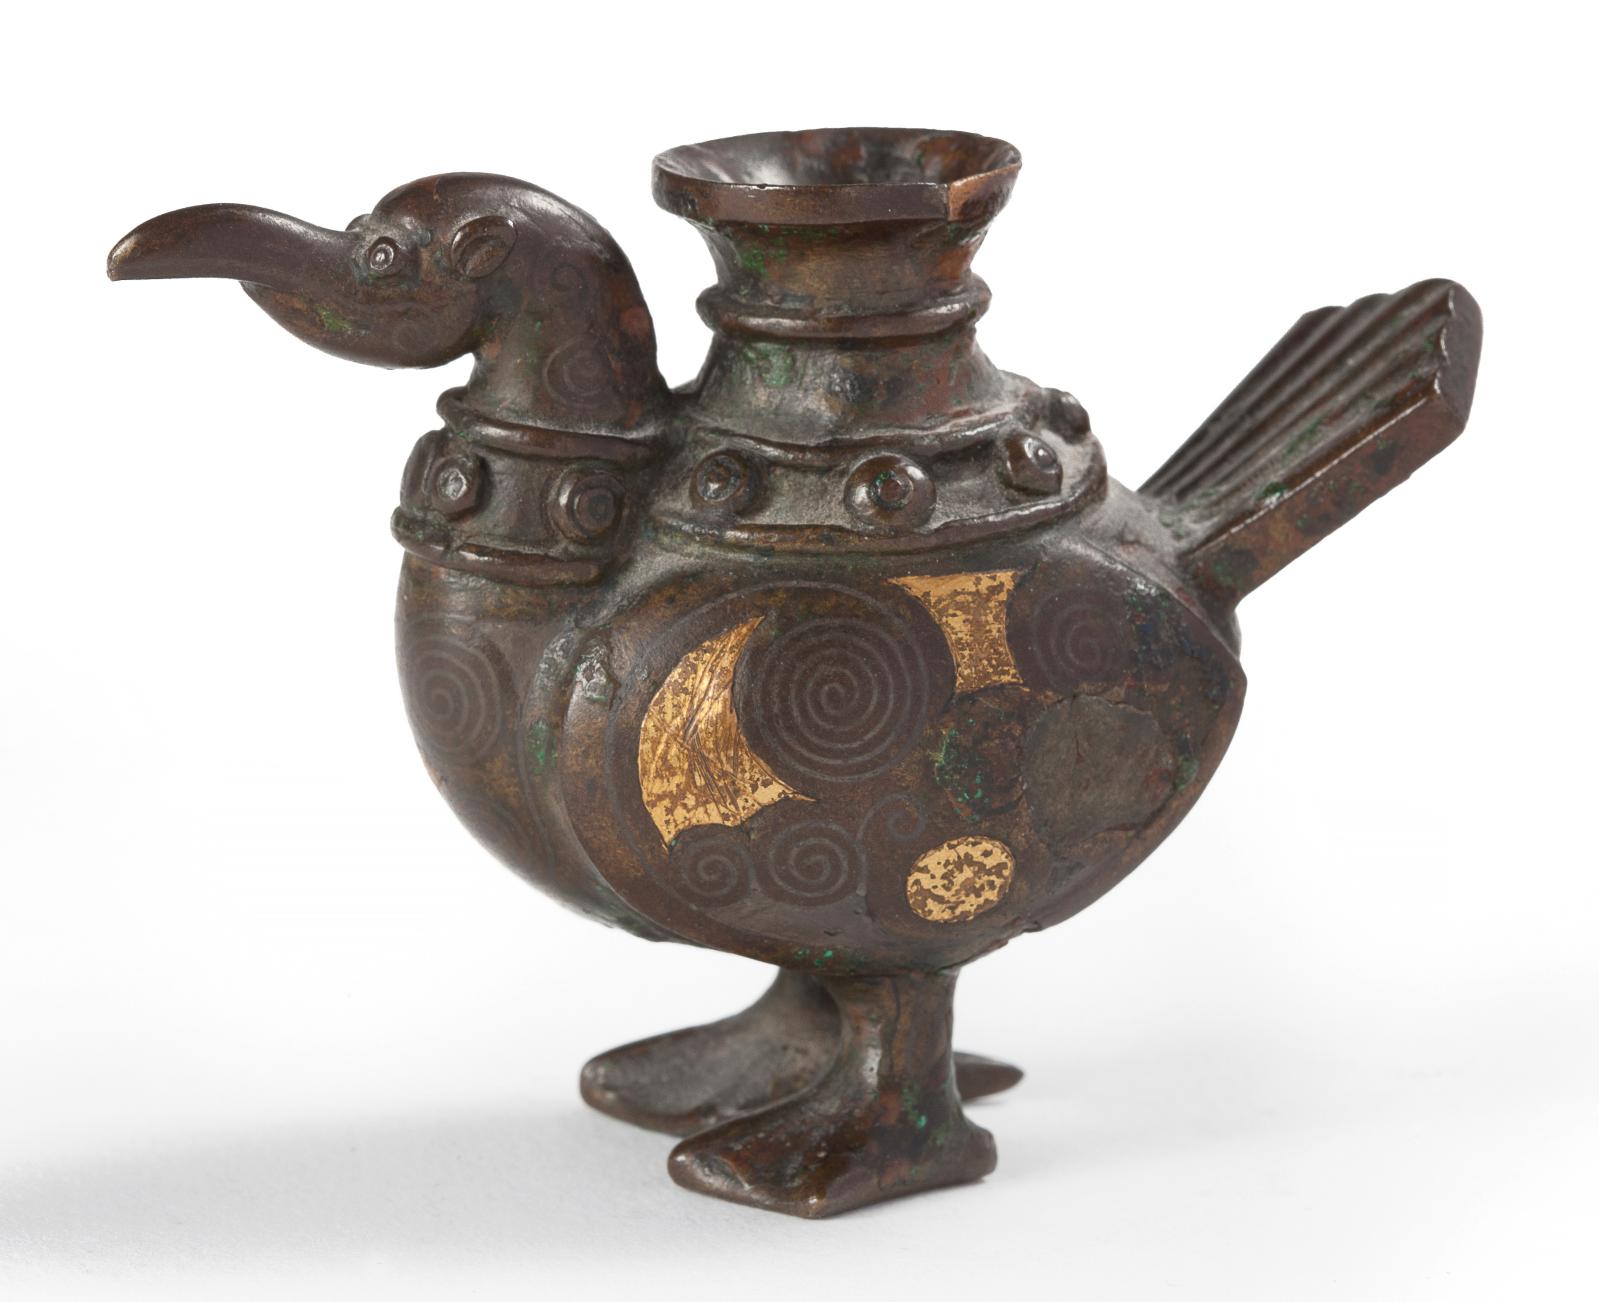 Chine, XIXe siècle. Figurine d’oiseau en bronze à patine brune et taches d’or dans le style archaïque, faisant office de porte-bâton d’encens, h. 6 cm